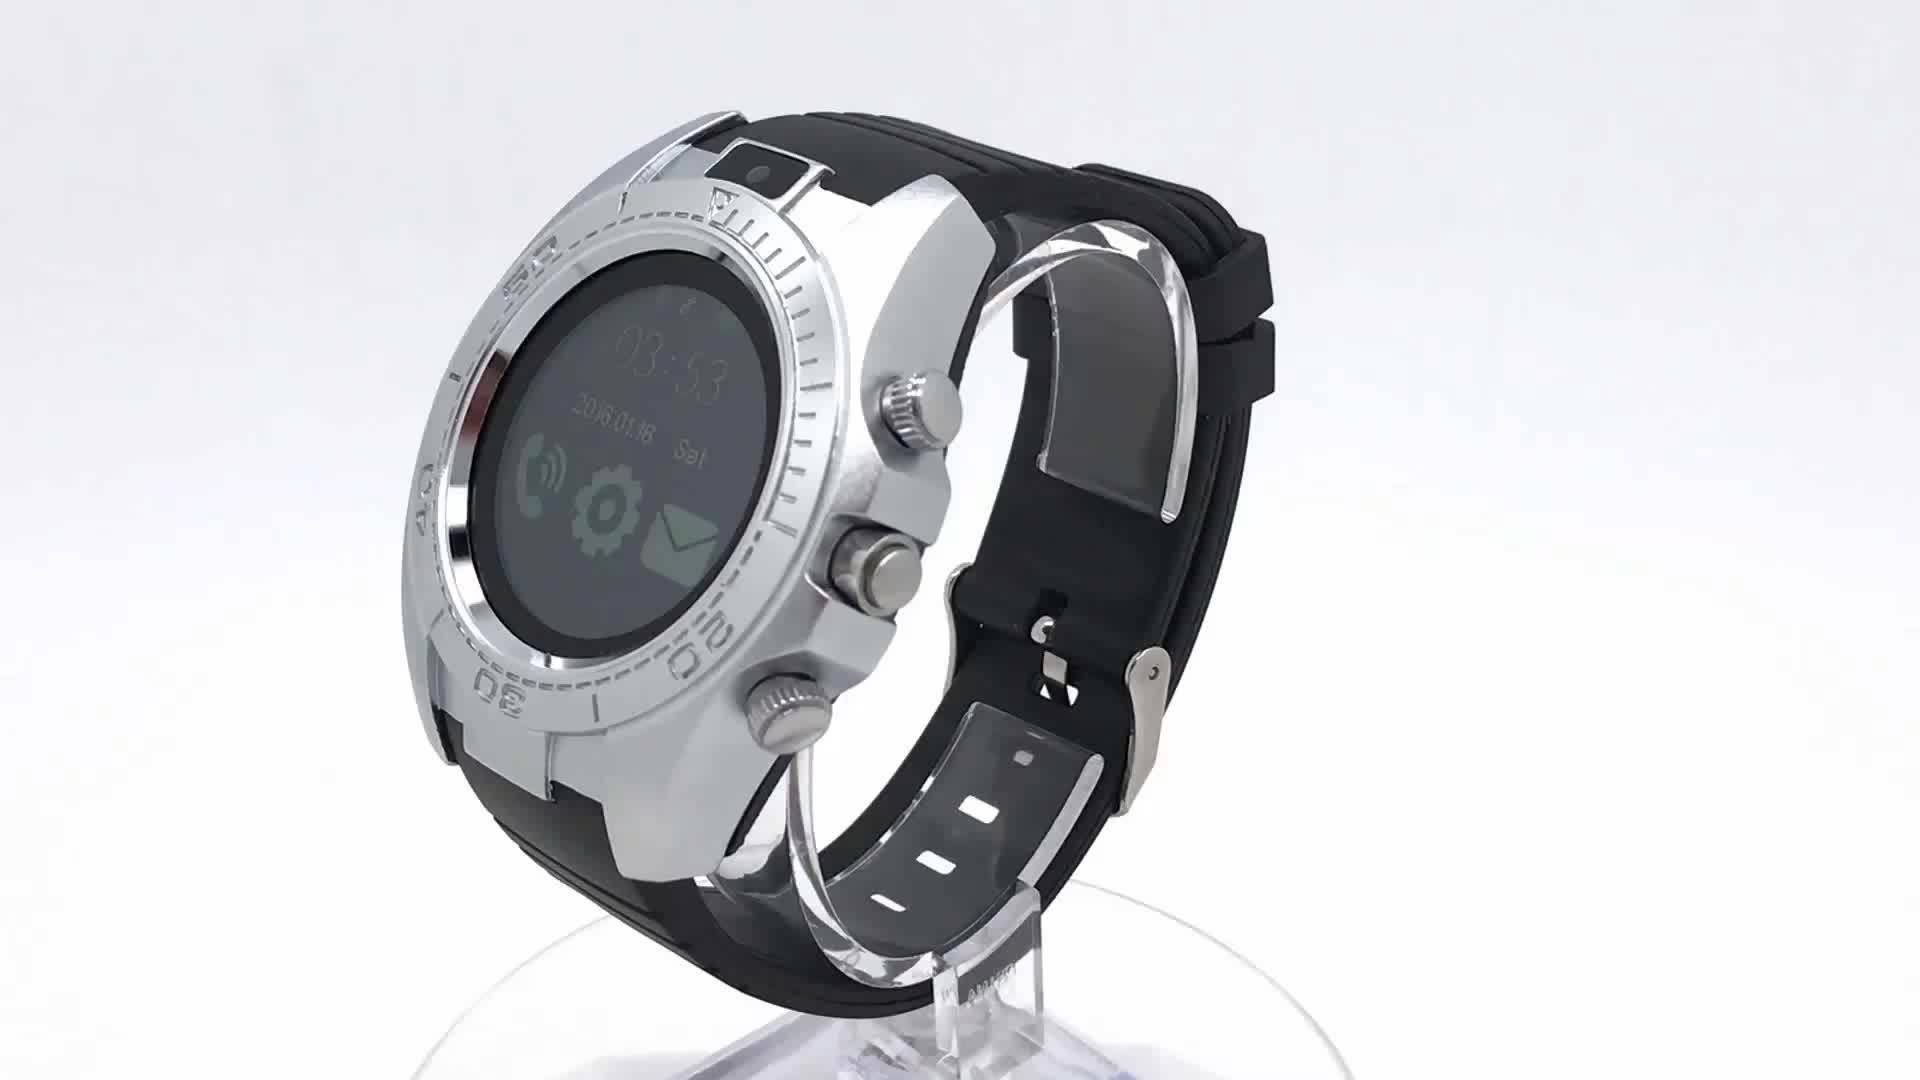 Умные часы smart watch sw007: дизайн, характеристики, функции, цена